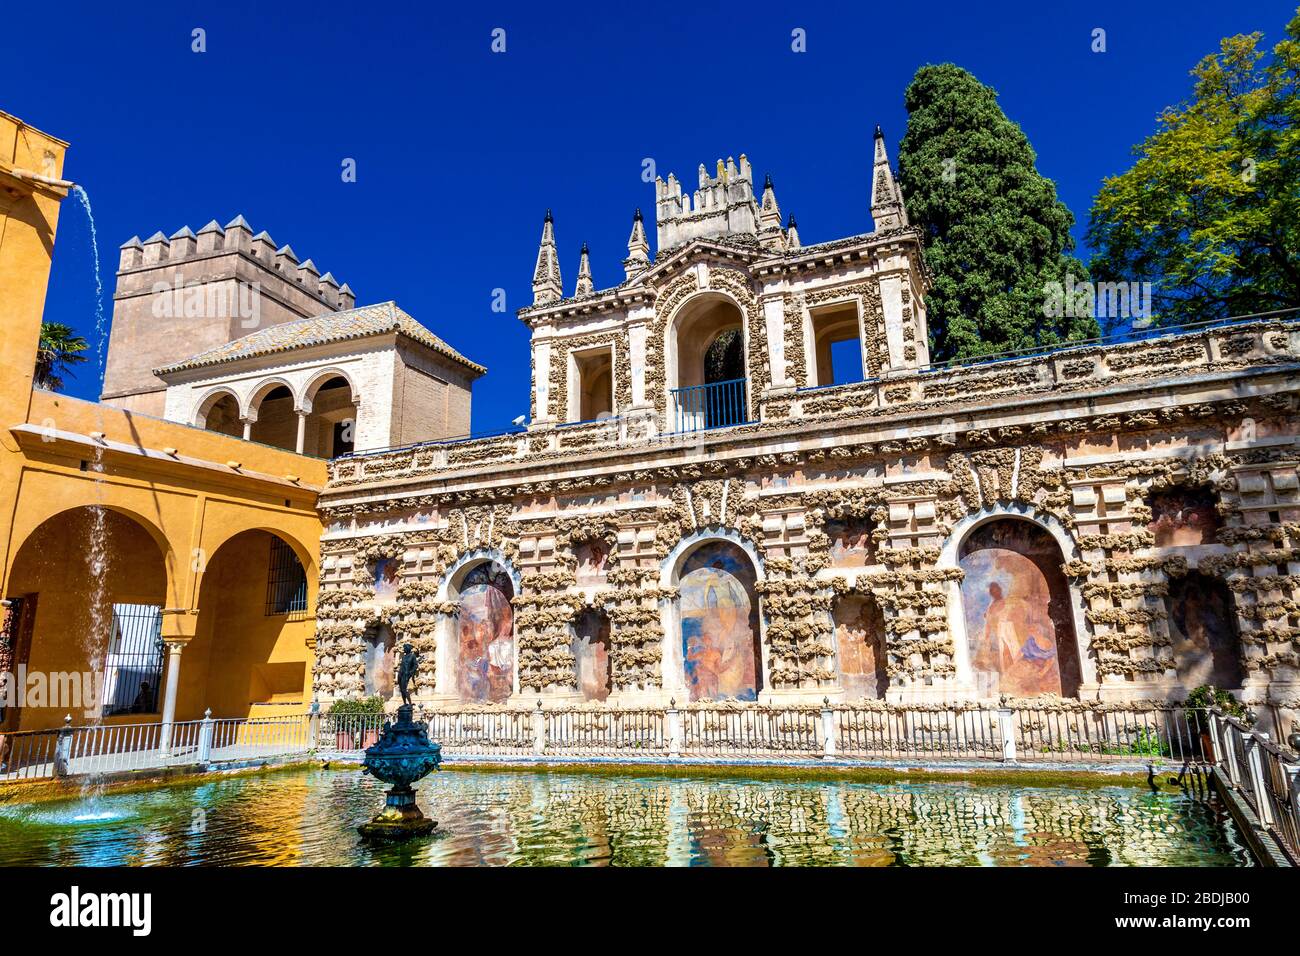 Fontaine et extérieur de la Galería del Grutesco (Grotto Gallery), Royal Alcázar de Séville, Espagne Banque D'Images